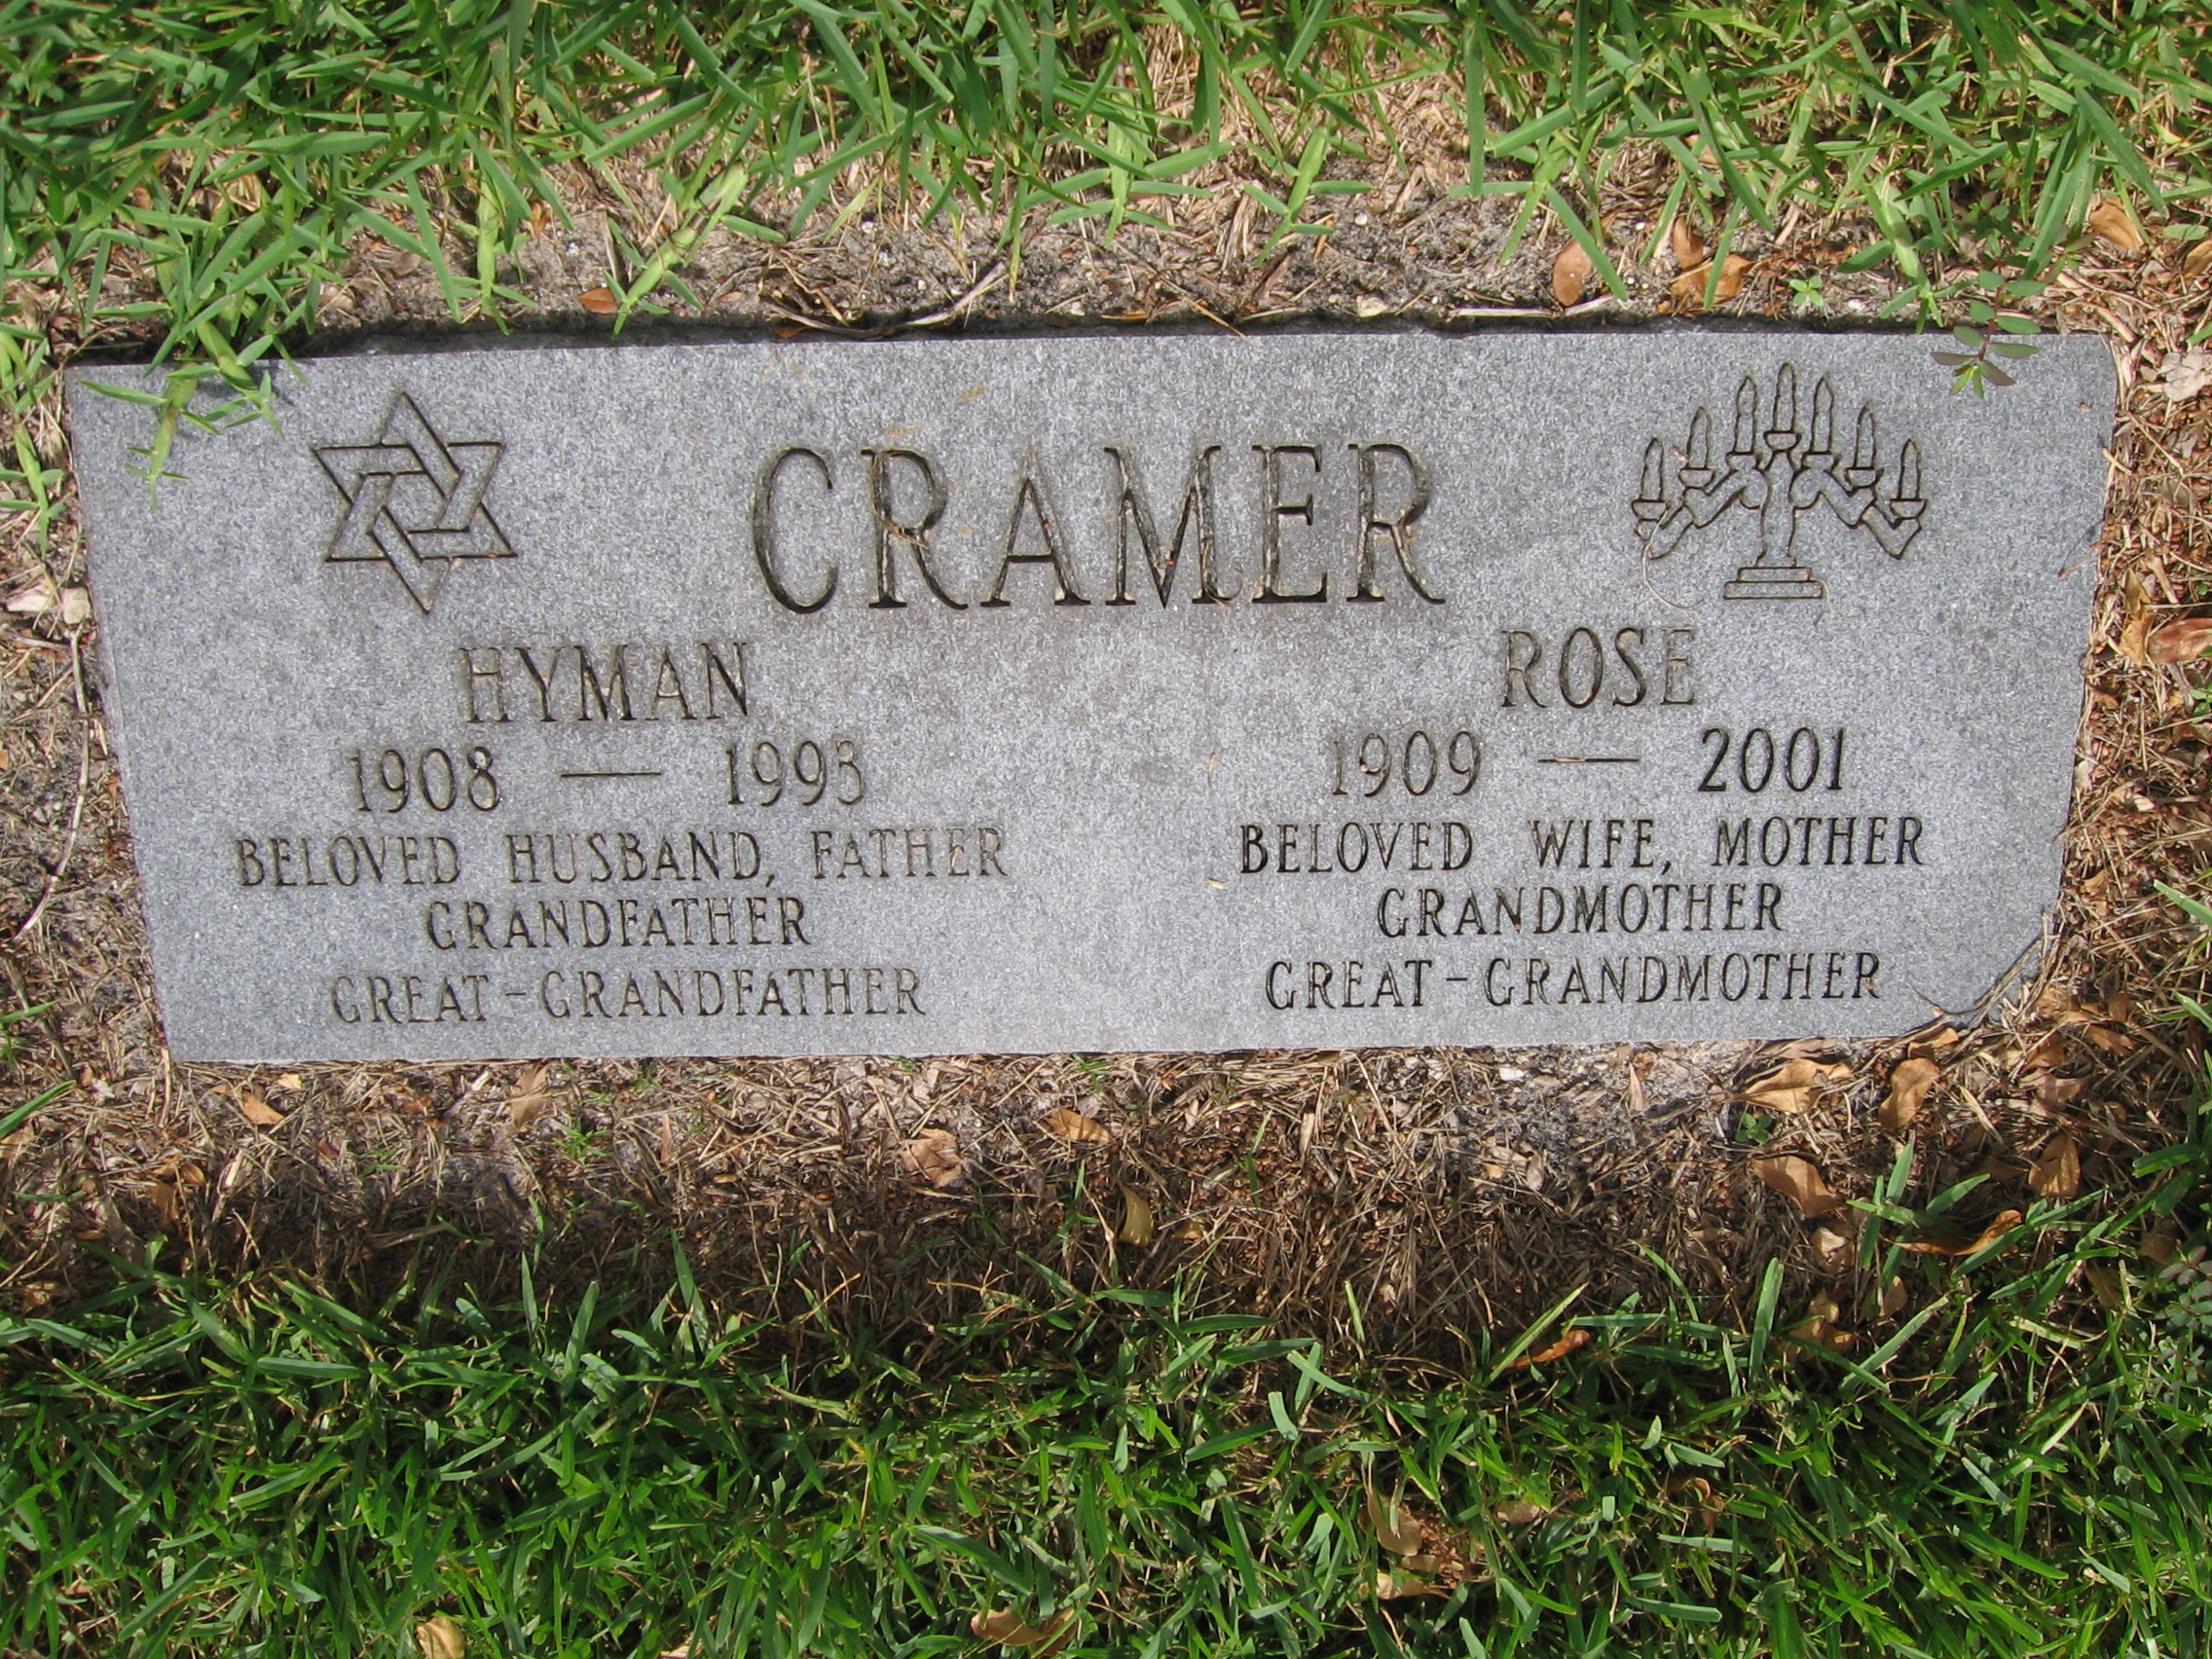 Hyman Cramer